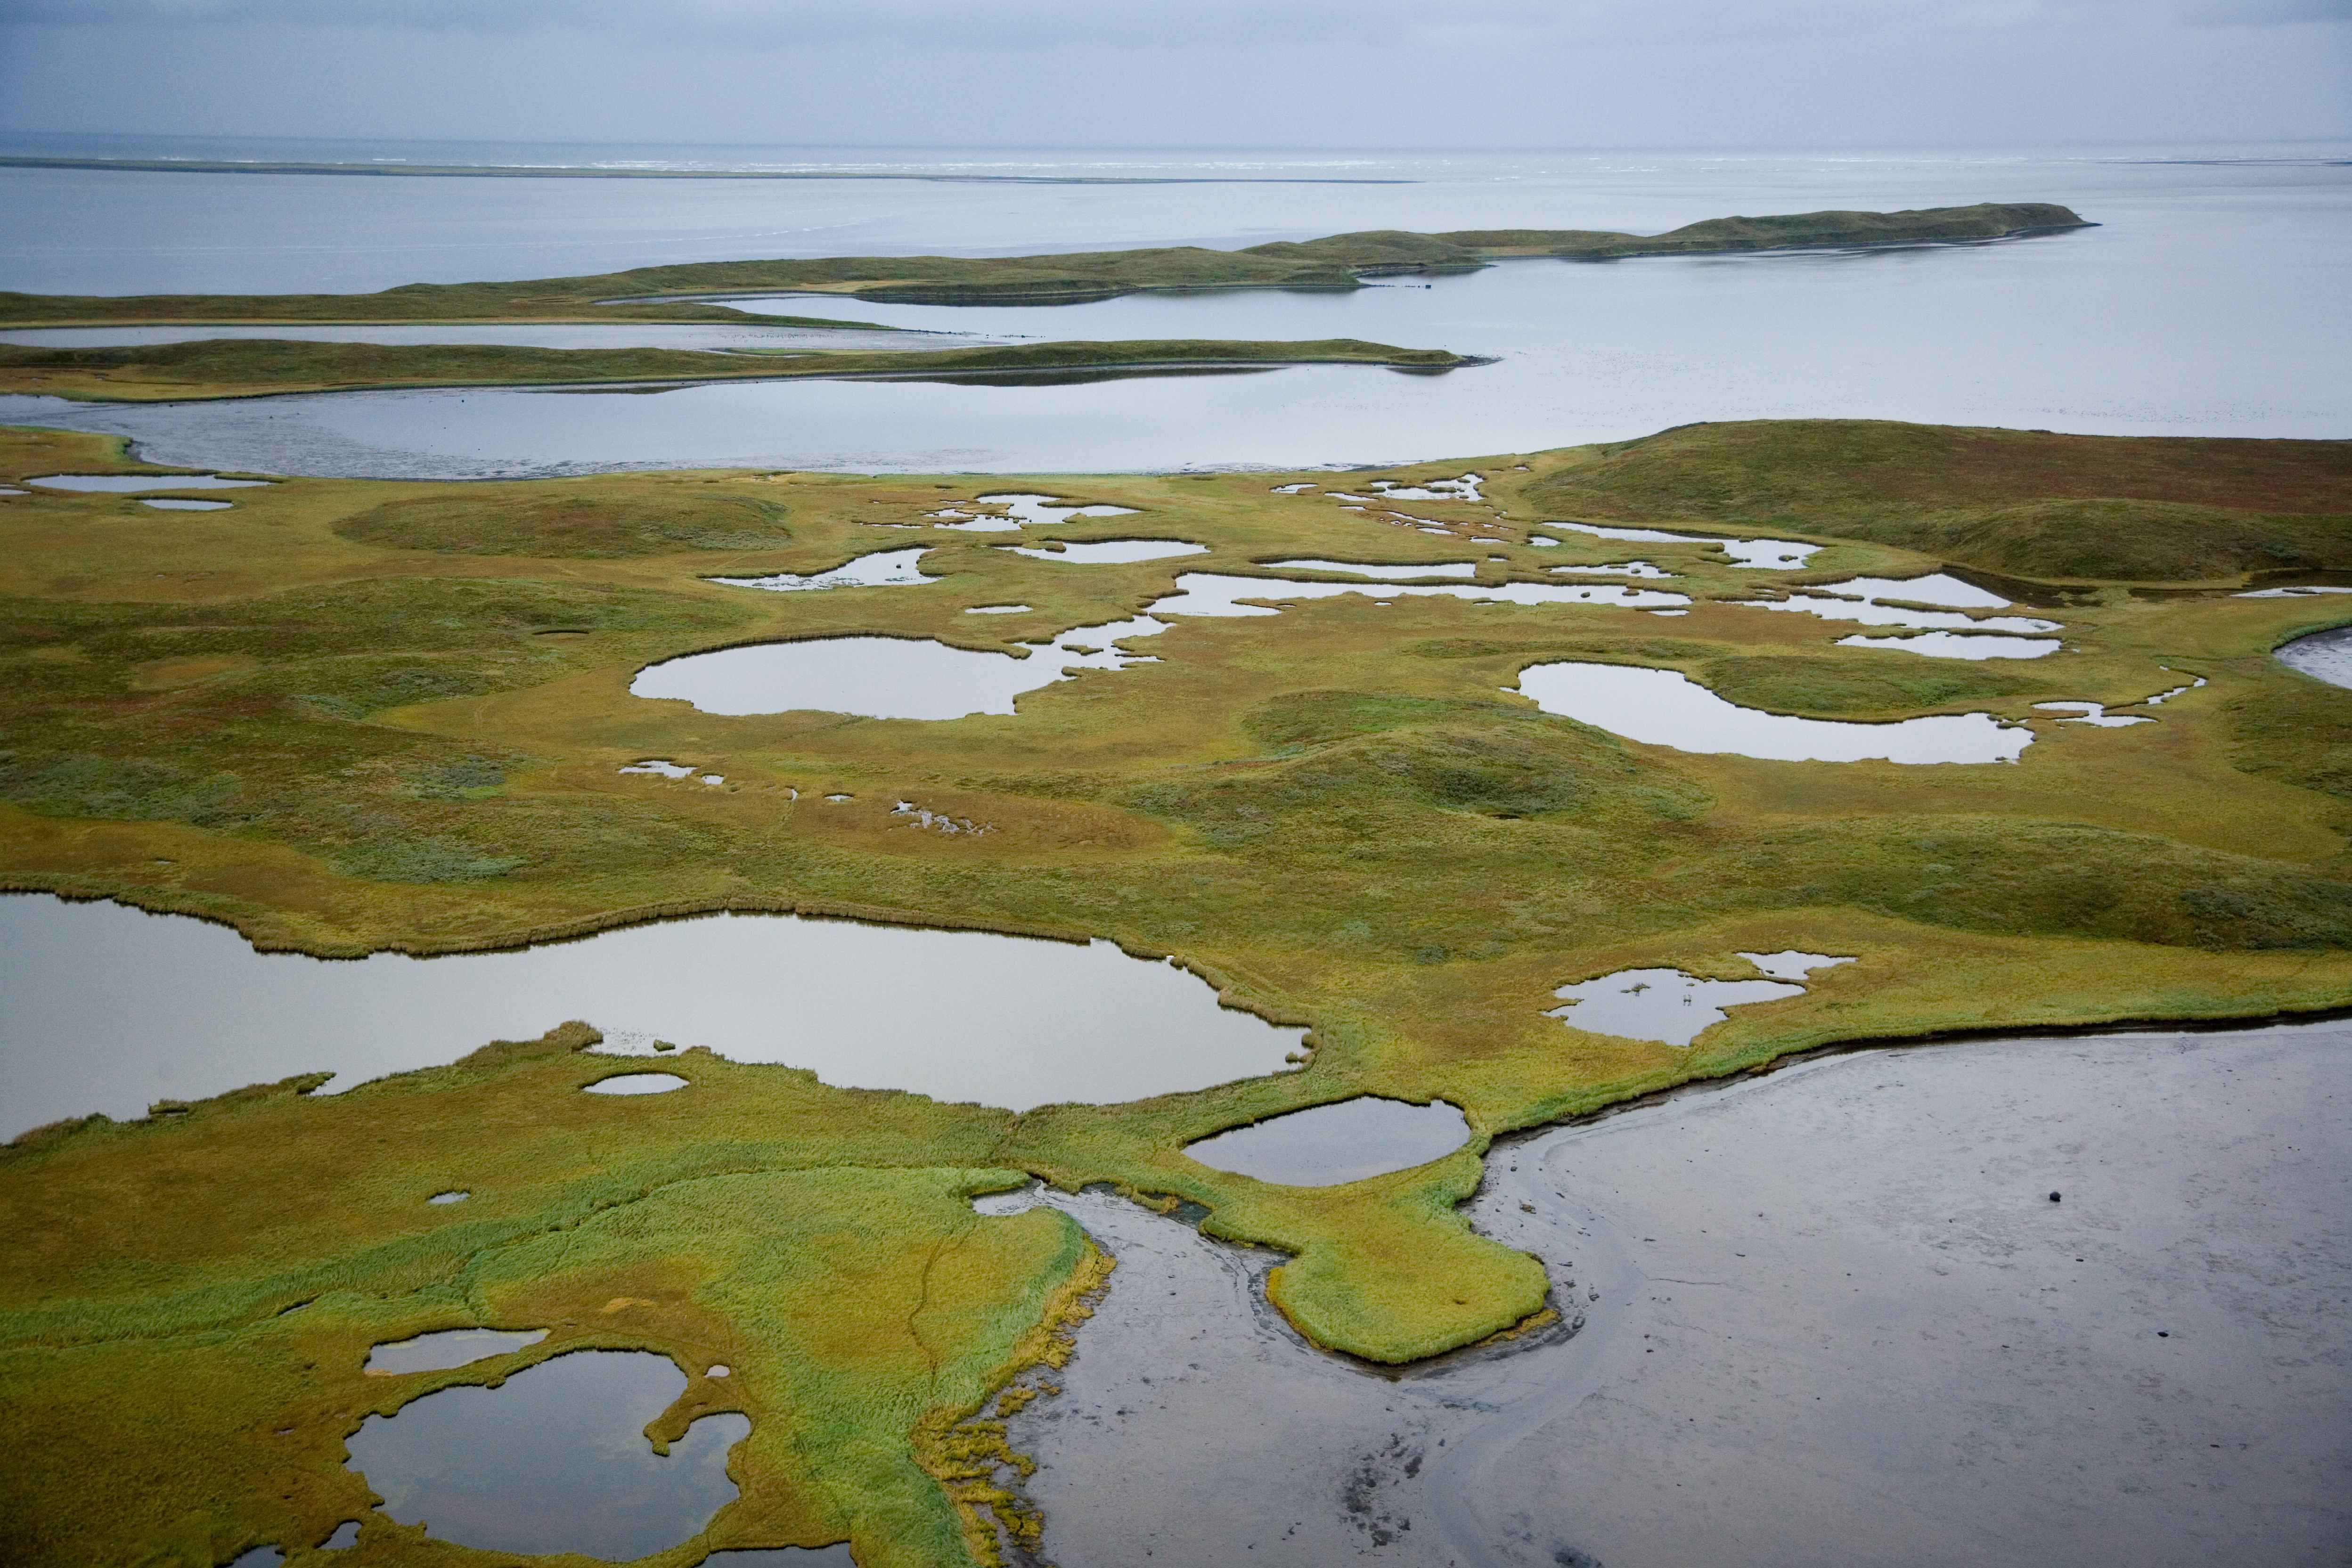 Крупнейшее болото европы. Термокарстовые озера Восточной Сибири. Заболоченная тундра. Термокарст (термокарстовое озеро. Термокарст в тундре.